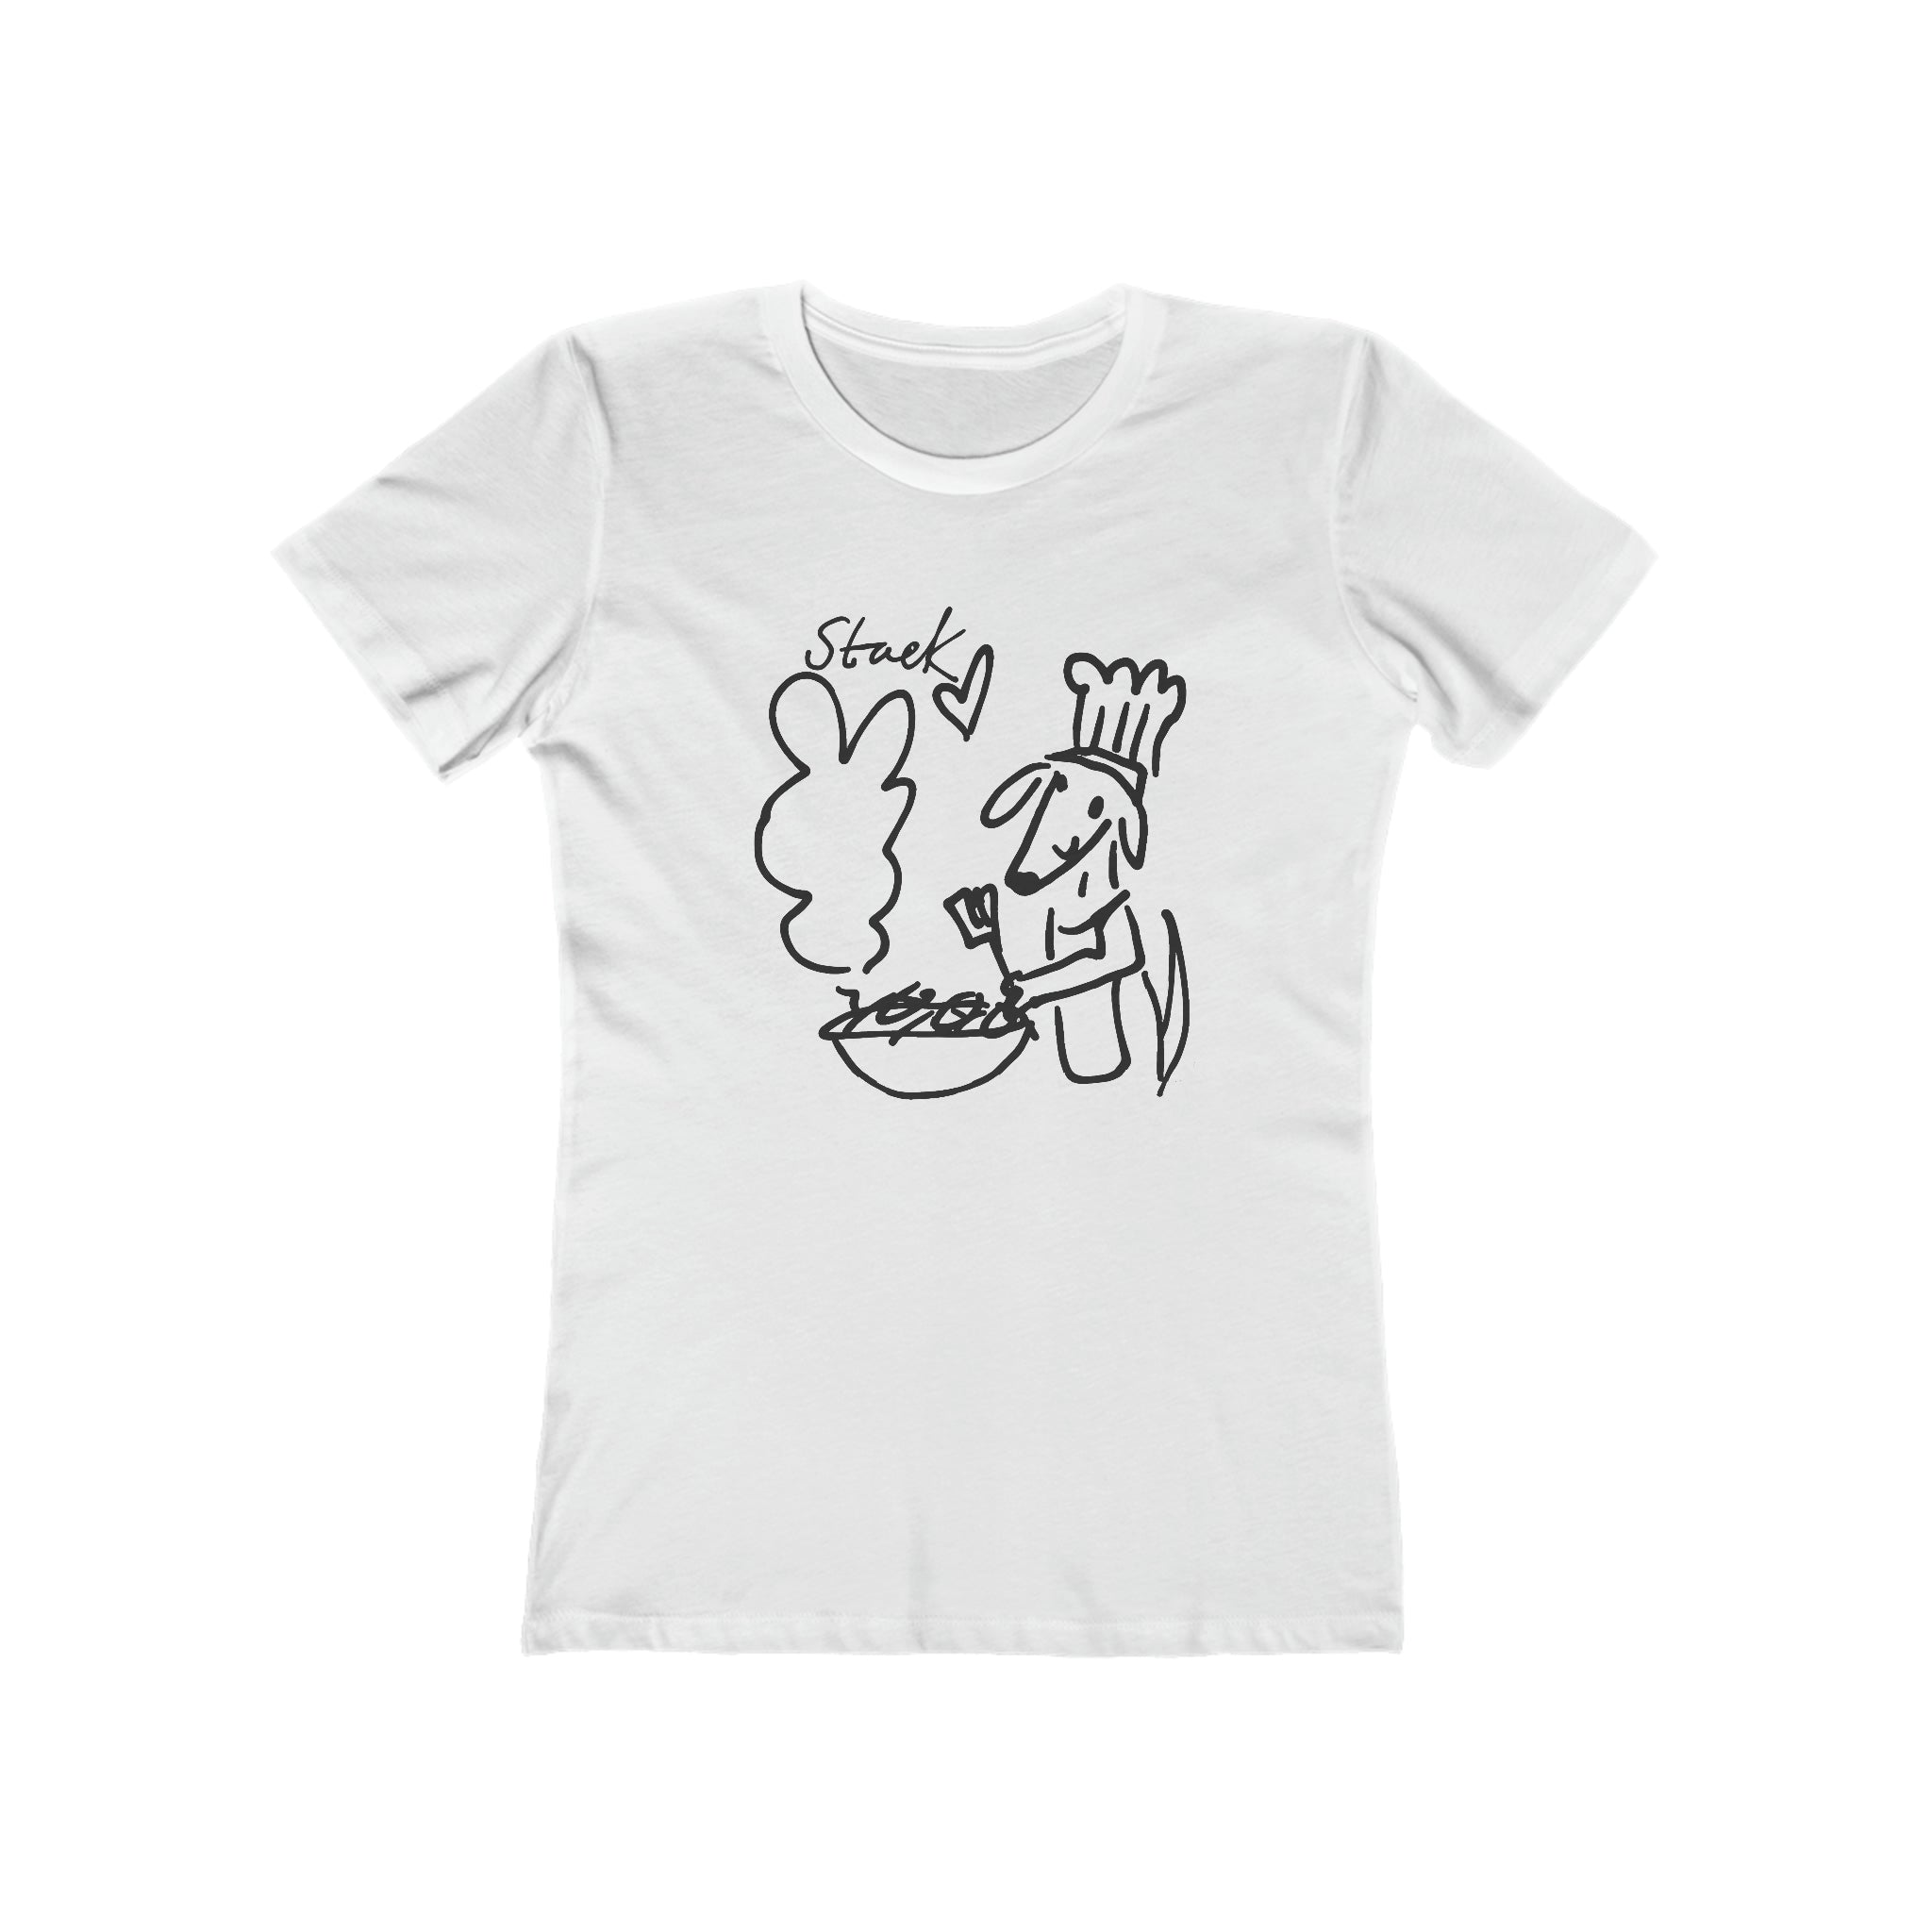 Staek! WM Follower Contribution : Women's Cotton T-Shirt by Bella+Canvas